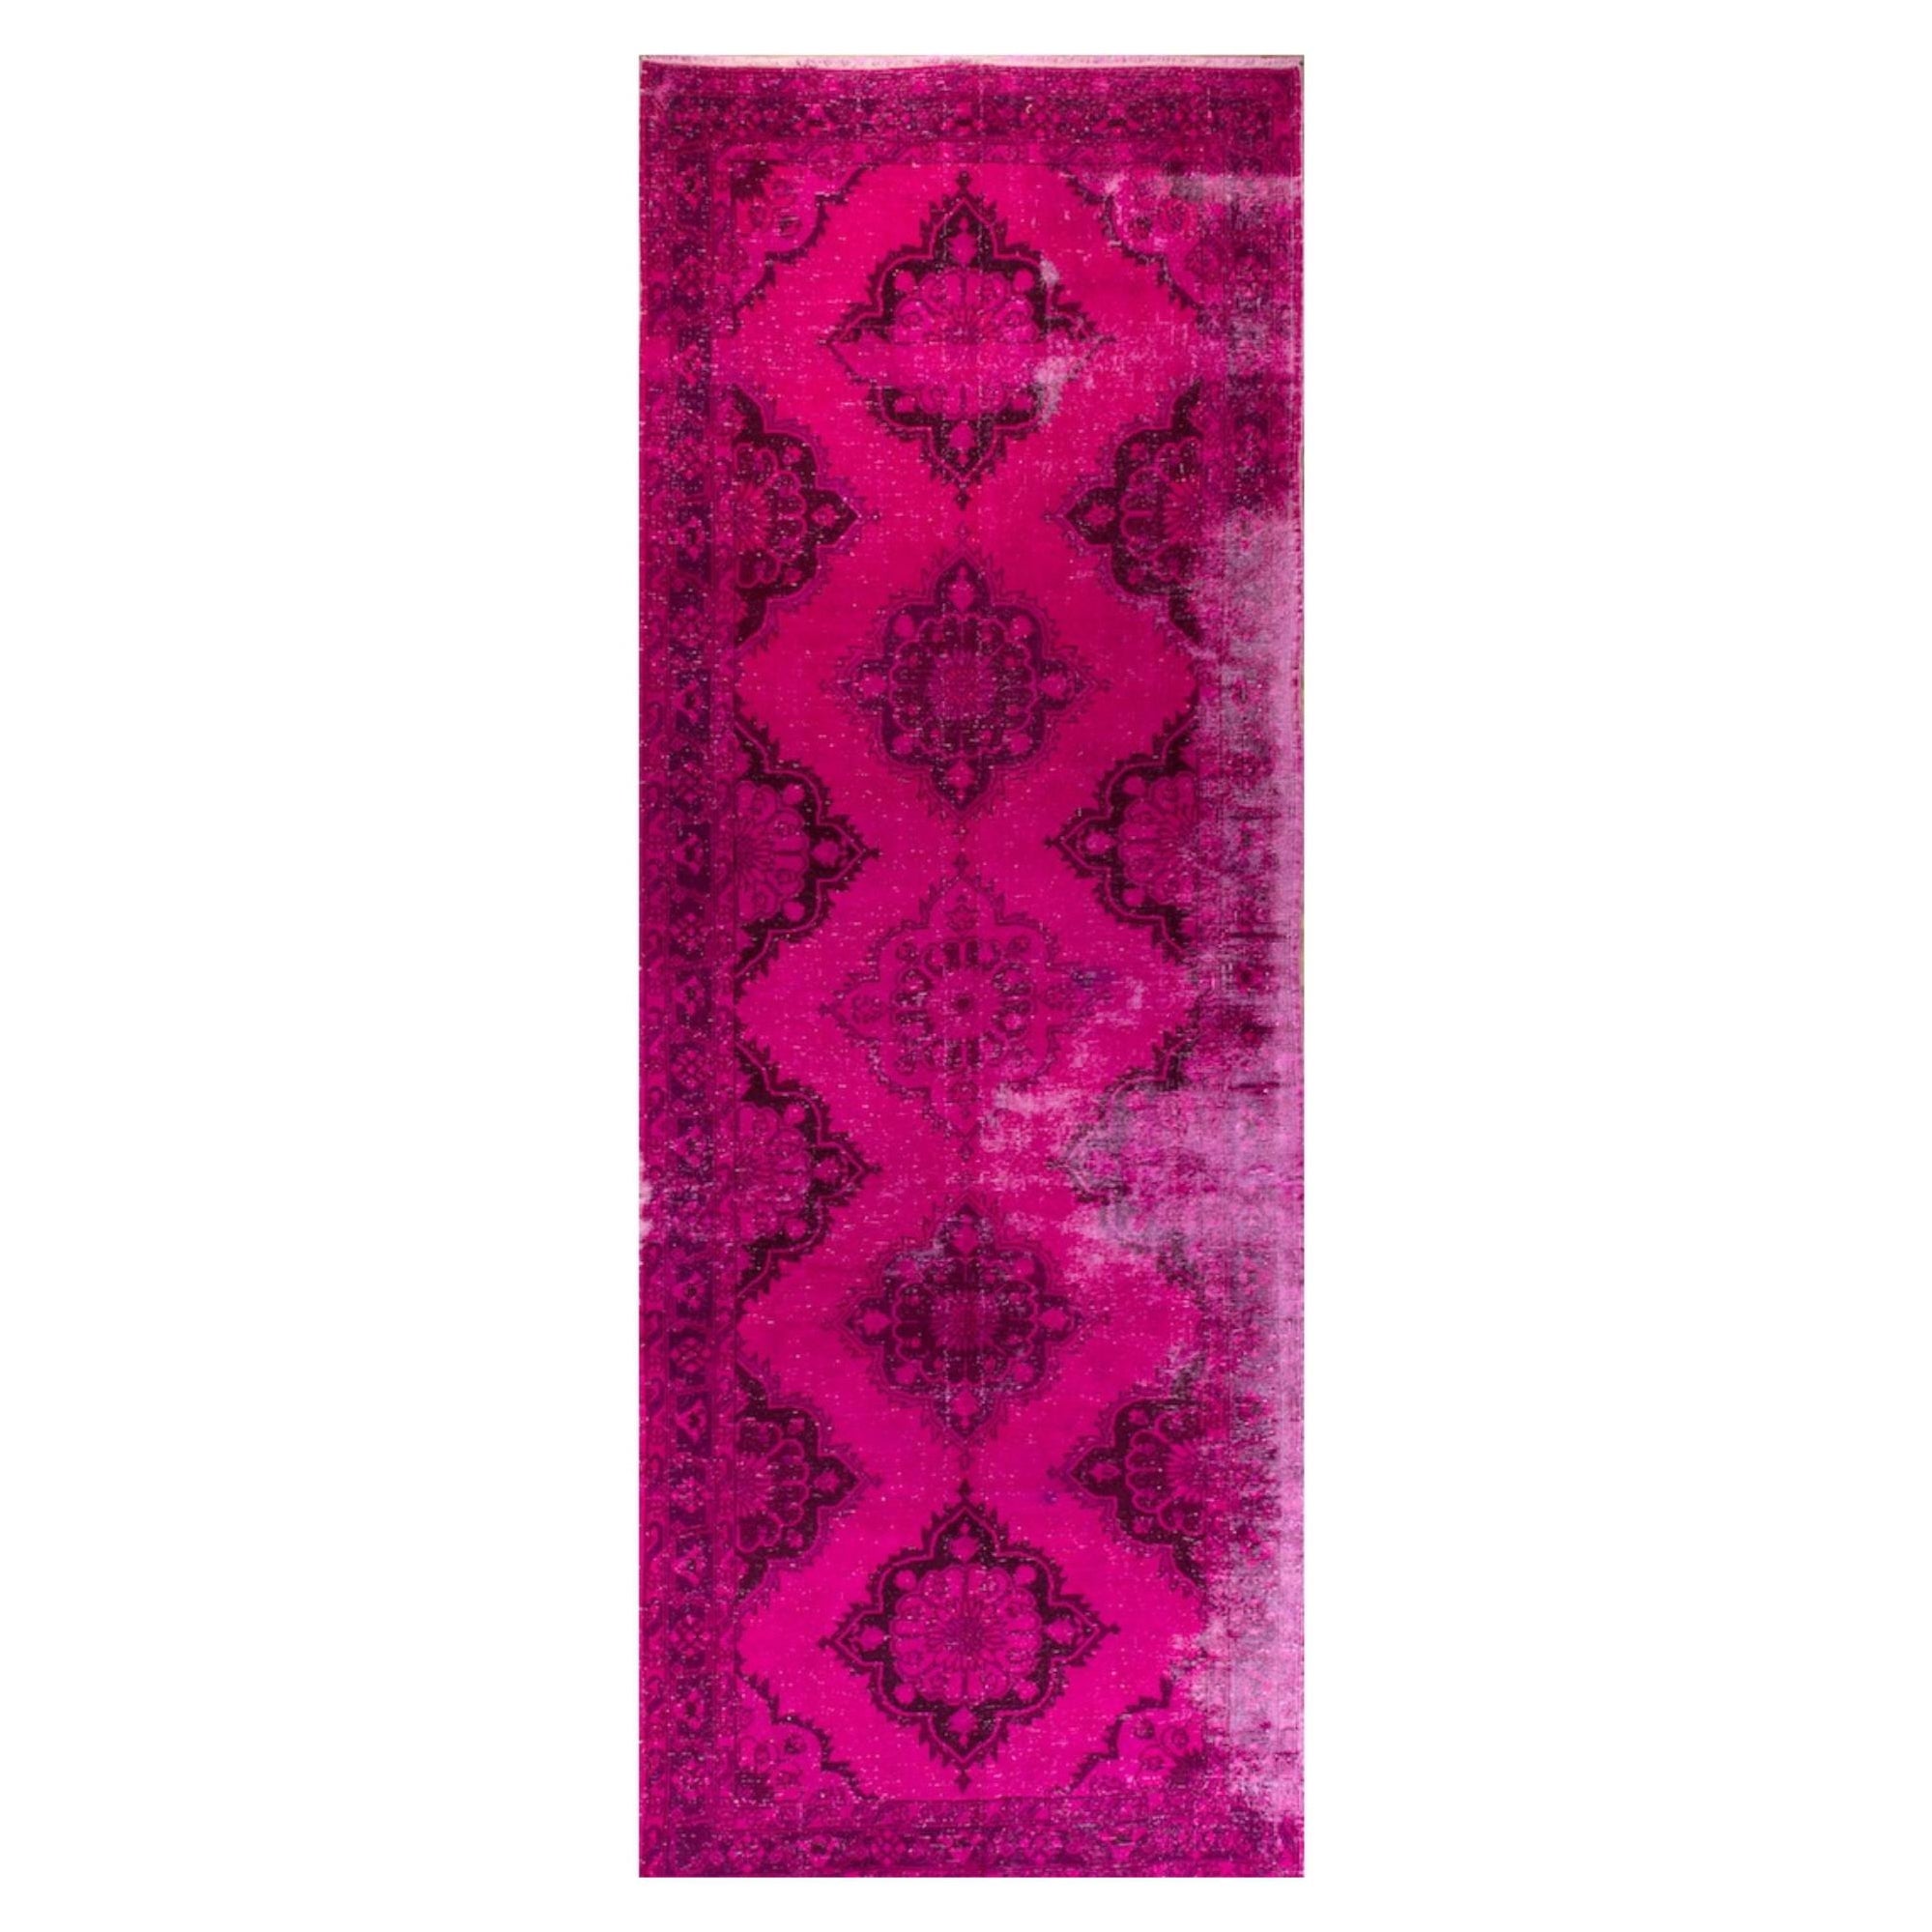 5x13.3 ft Vintage Handmade Turkish Wool Runner Rug in Hot Pink for Hallway Decor (Tapis de course en laine turque fait à la main en rose vif pour la décoration des couloirs)